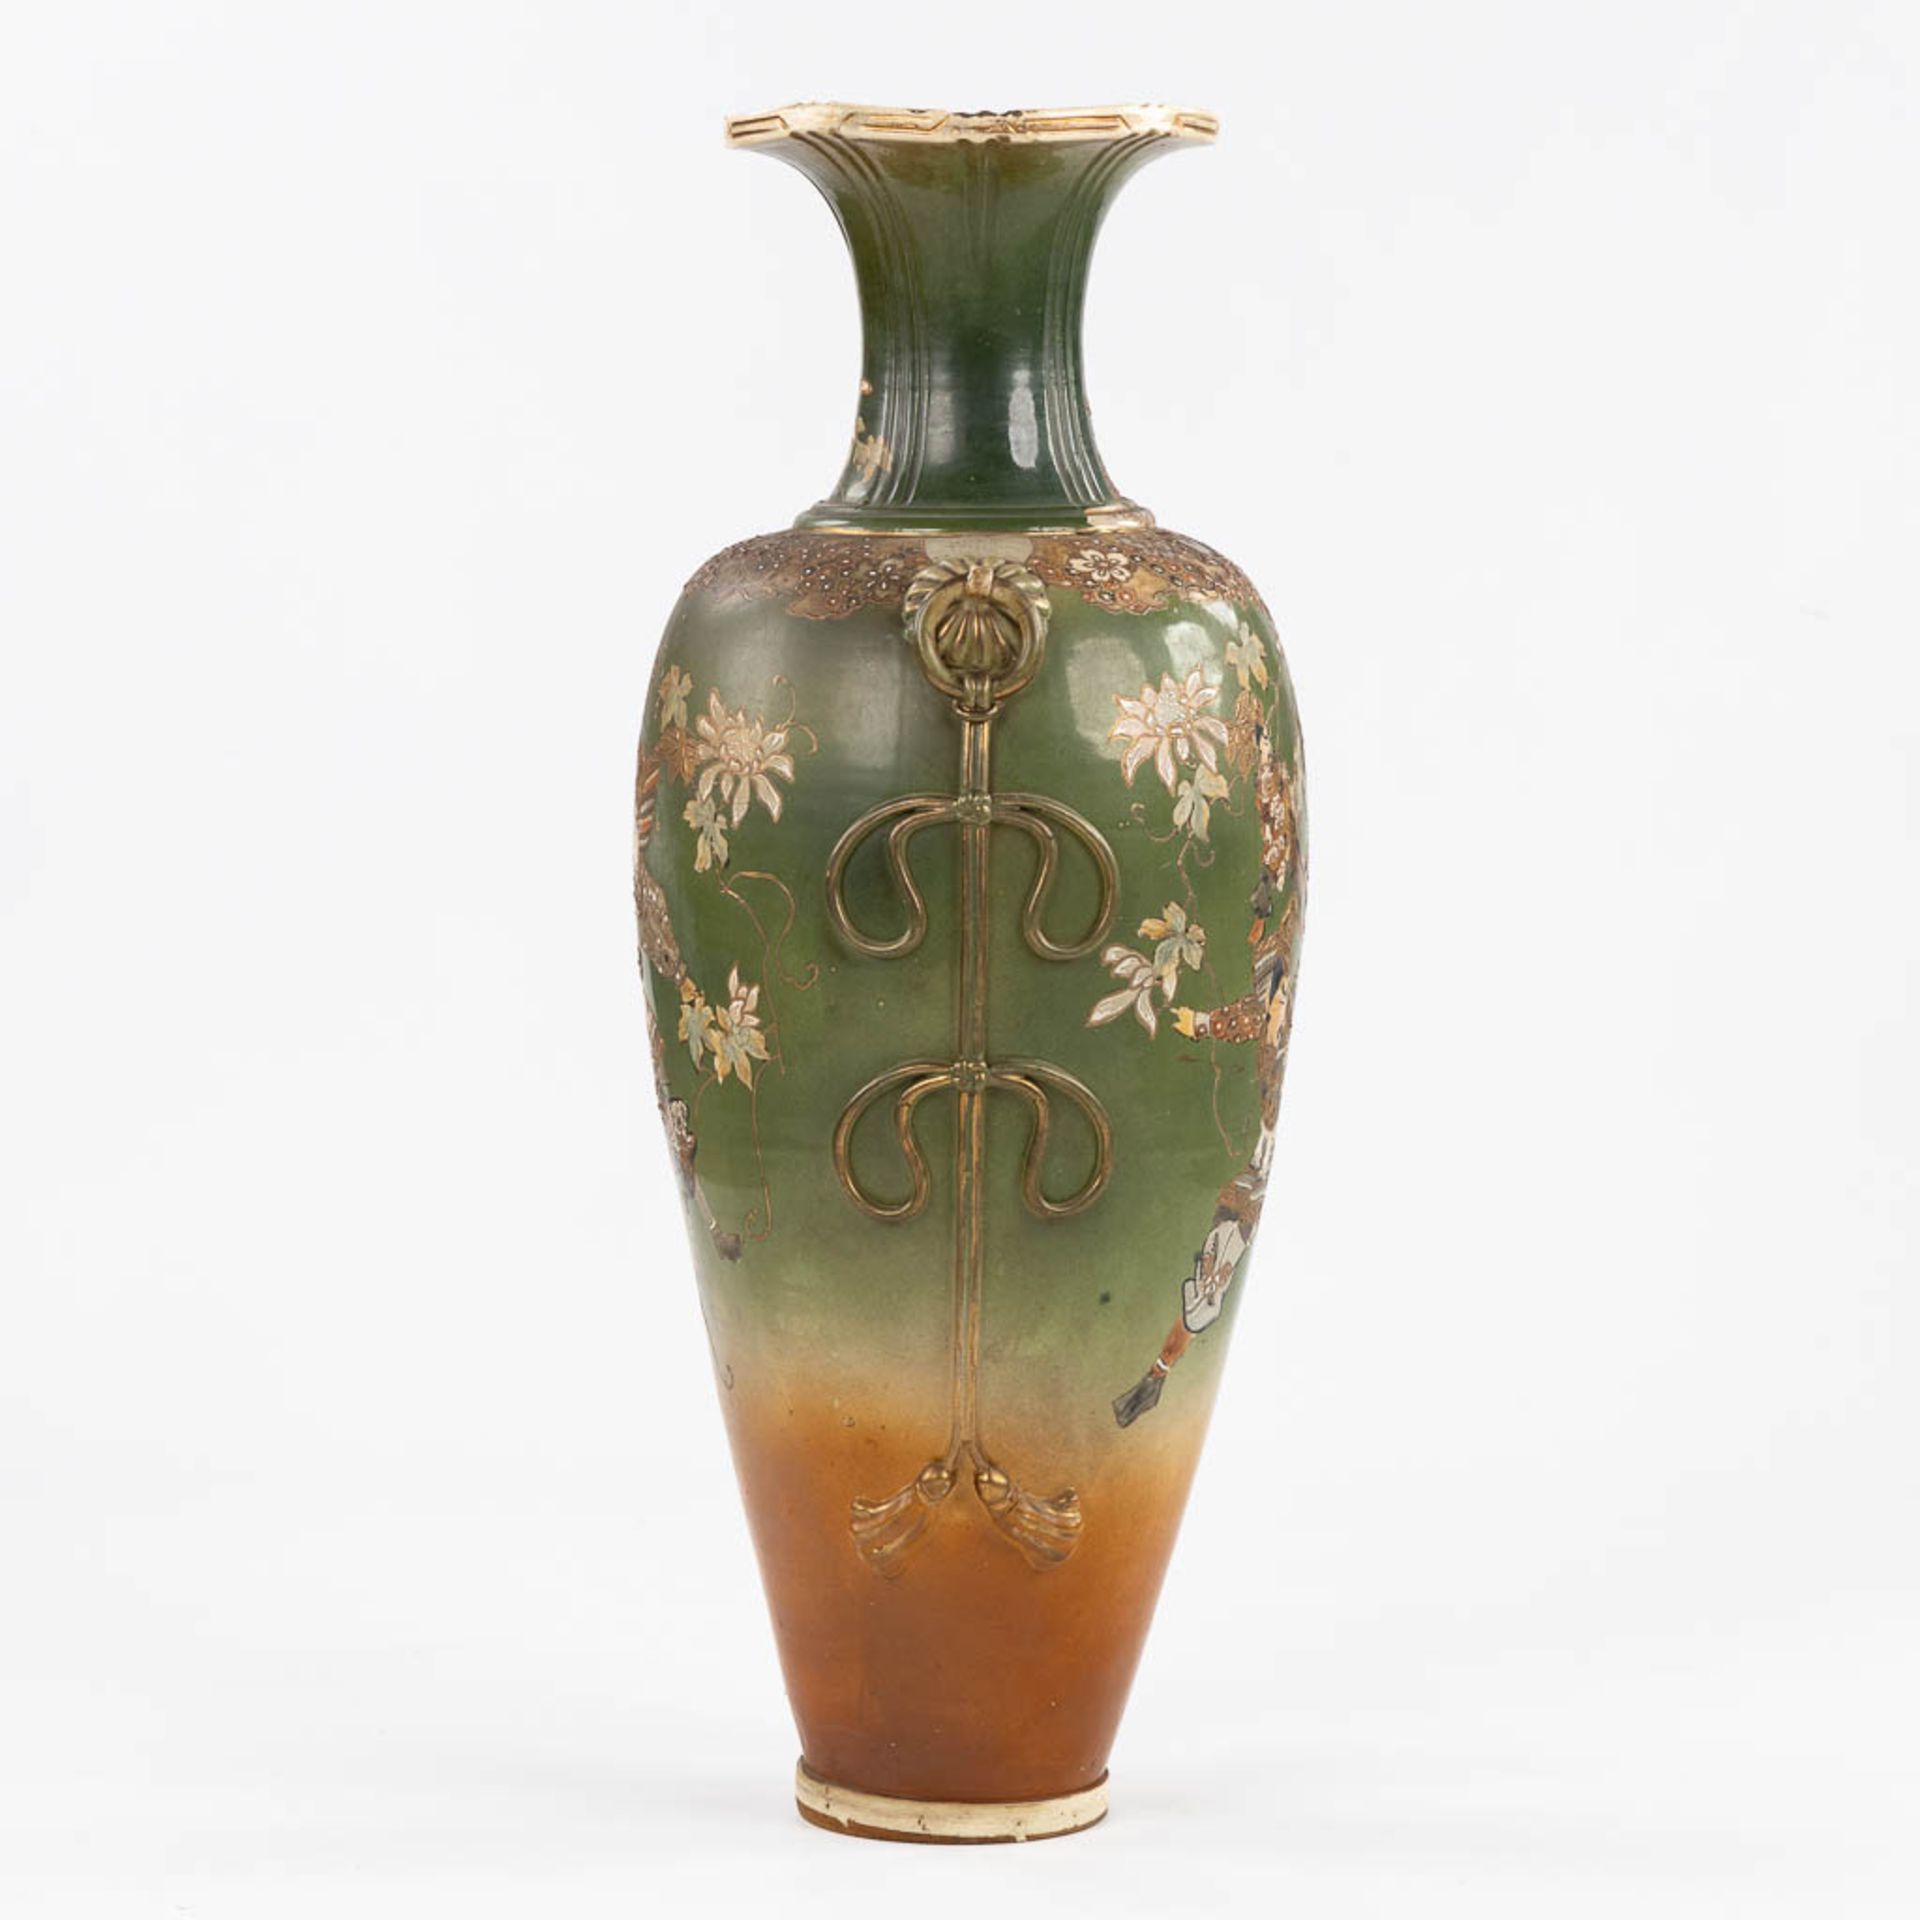 A decorative Japanese vase with Warrior scène. (H:89 x D:35 cm) - Image 3 of 9